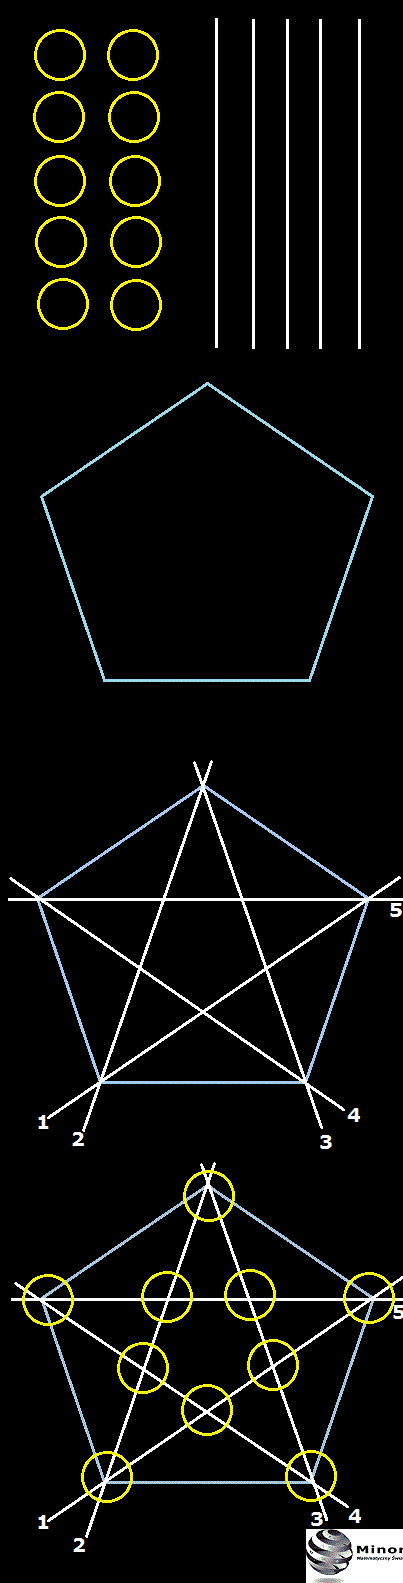  Czy da się połączyć proste z kółkami?  Jak narysować 5 linii i 10 kółek, aby na każdej linii zmieściły się 4 kółka?